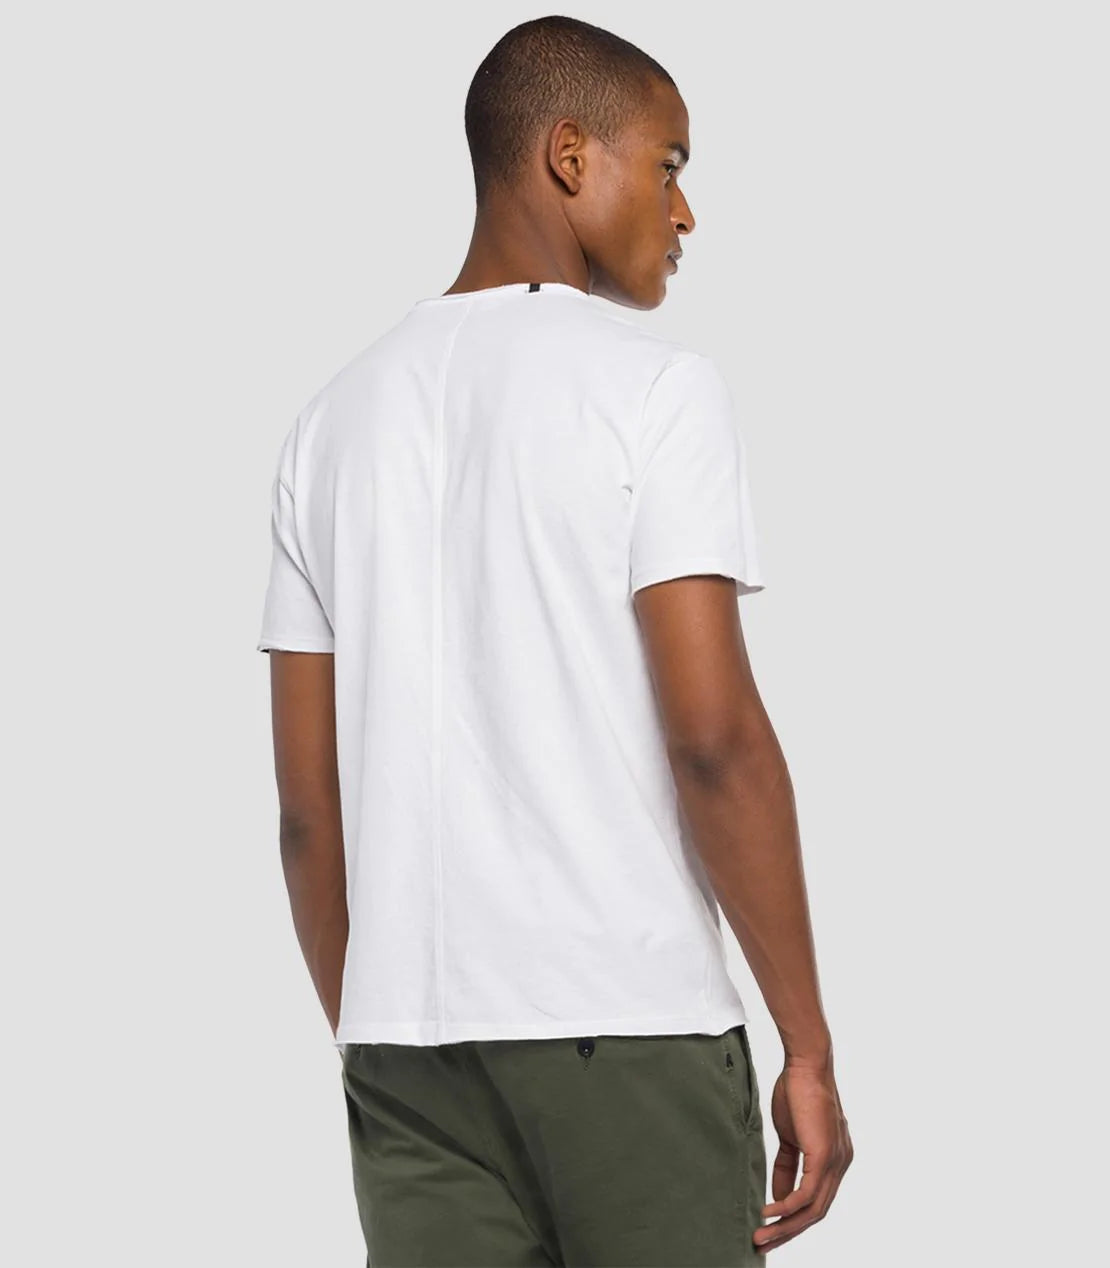 REPLAY T-Shirt weiß M3590